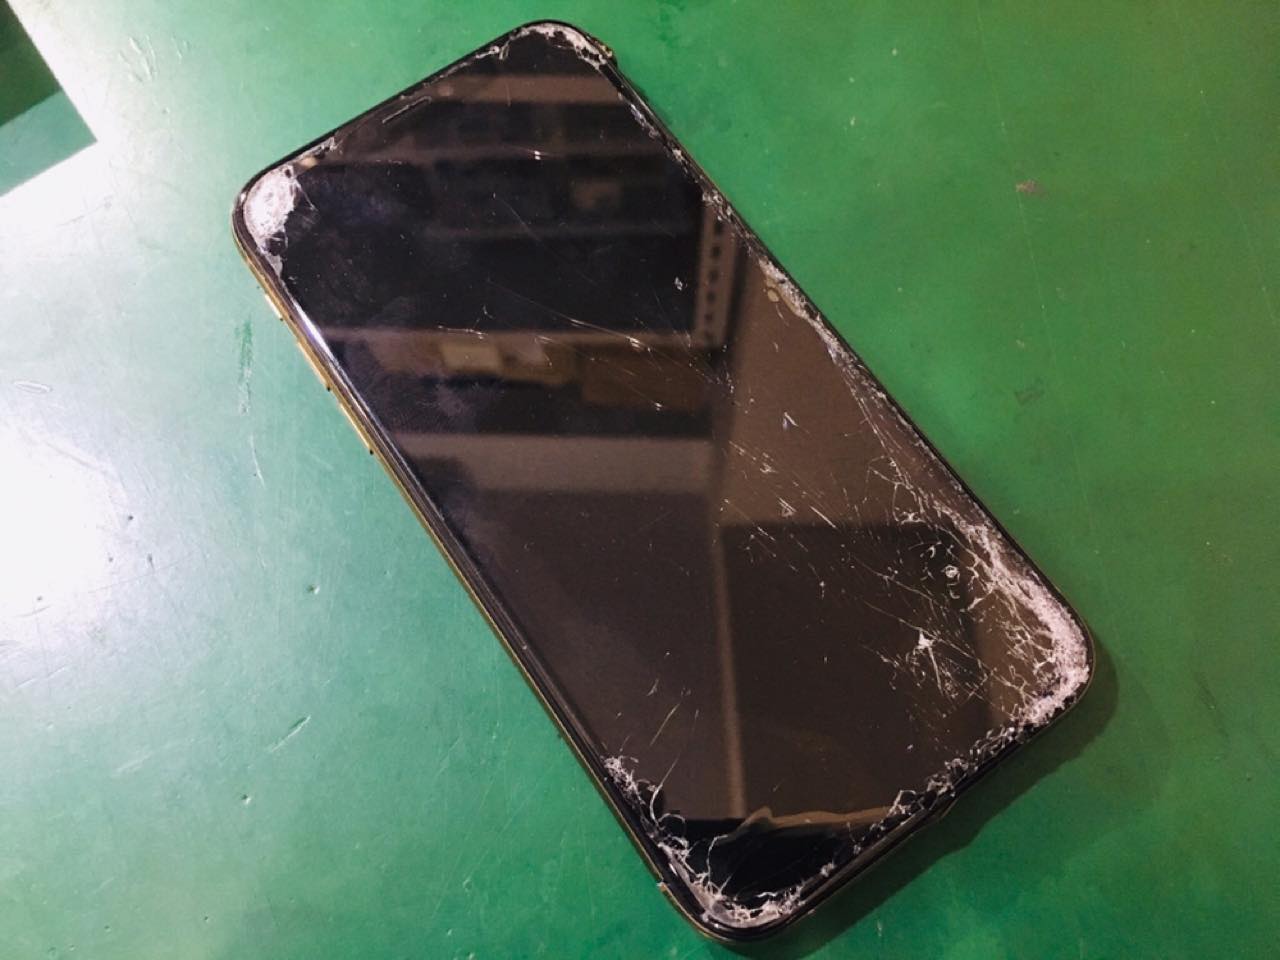 交換で直る Iphoneの画面が映らない つかない 液晶真っ暗な時の対処法 スマホ修理王